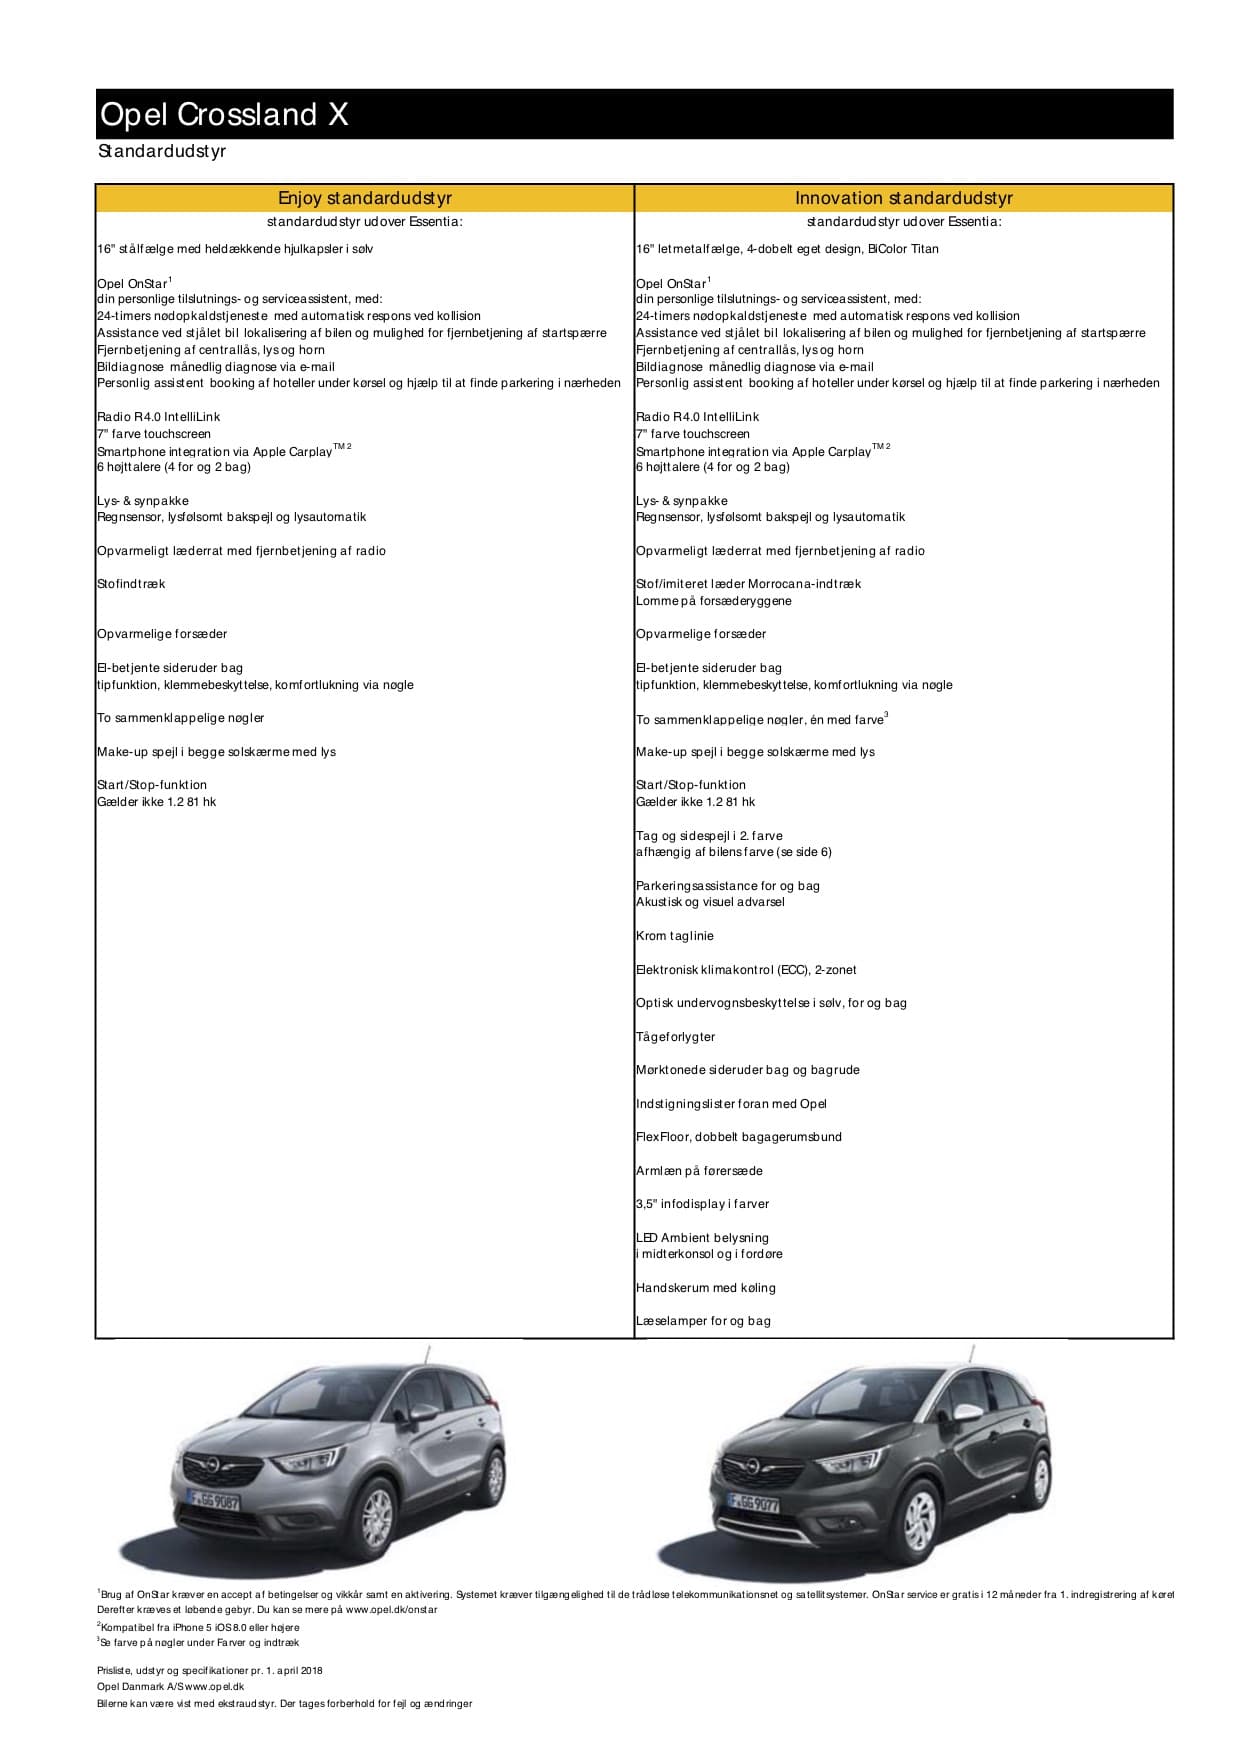 Opel Crossland X er en stor familiebil med et lille prisskilt